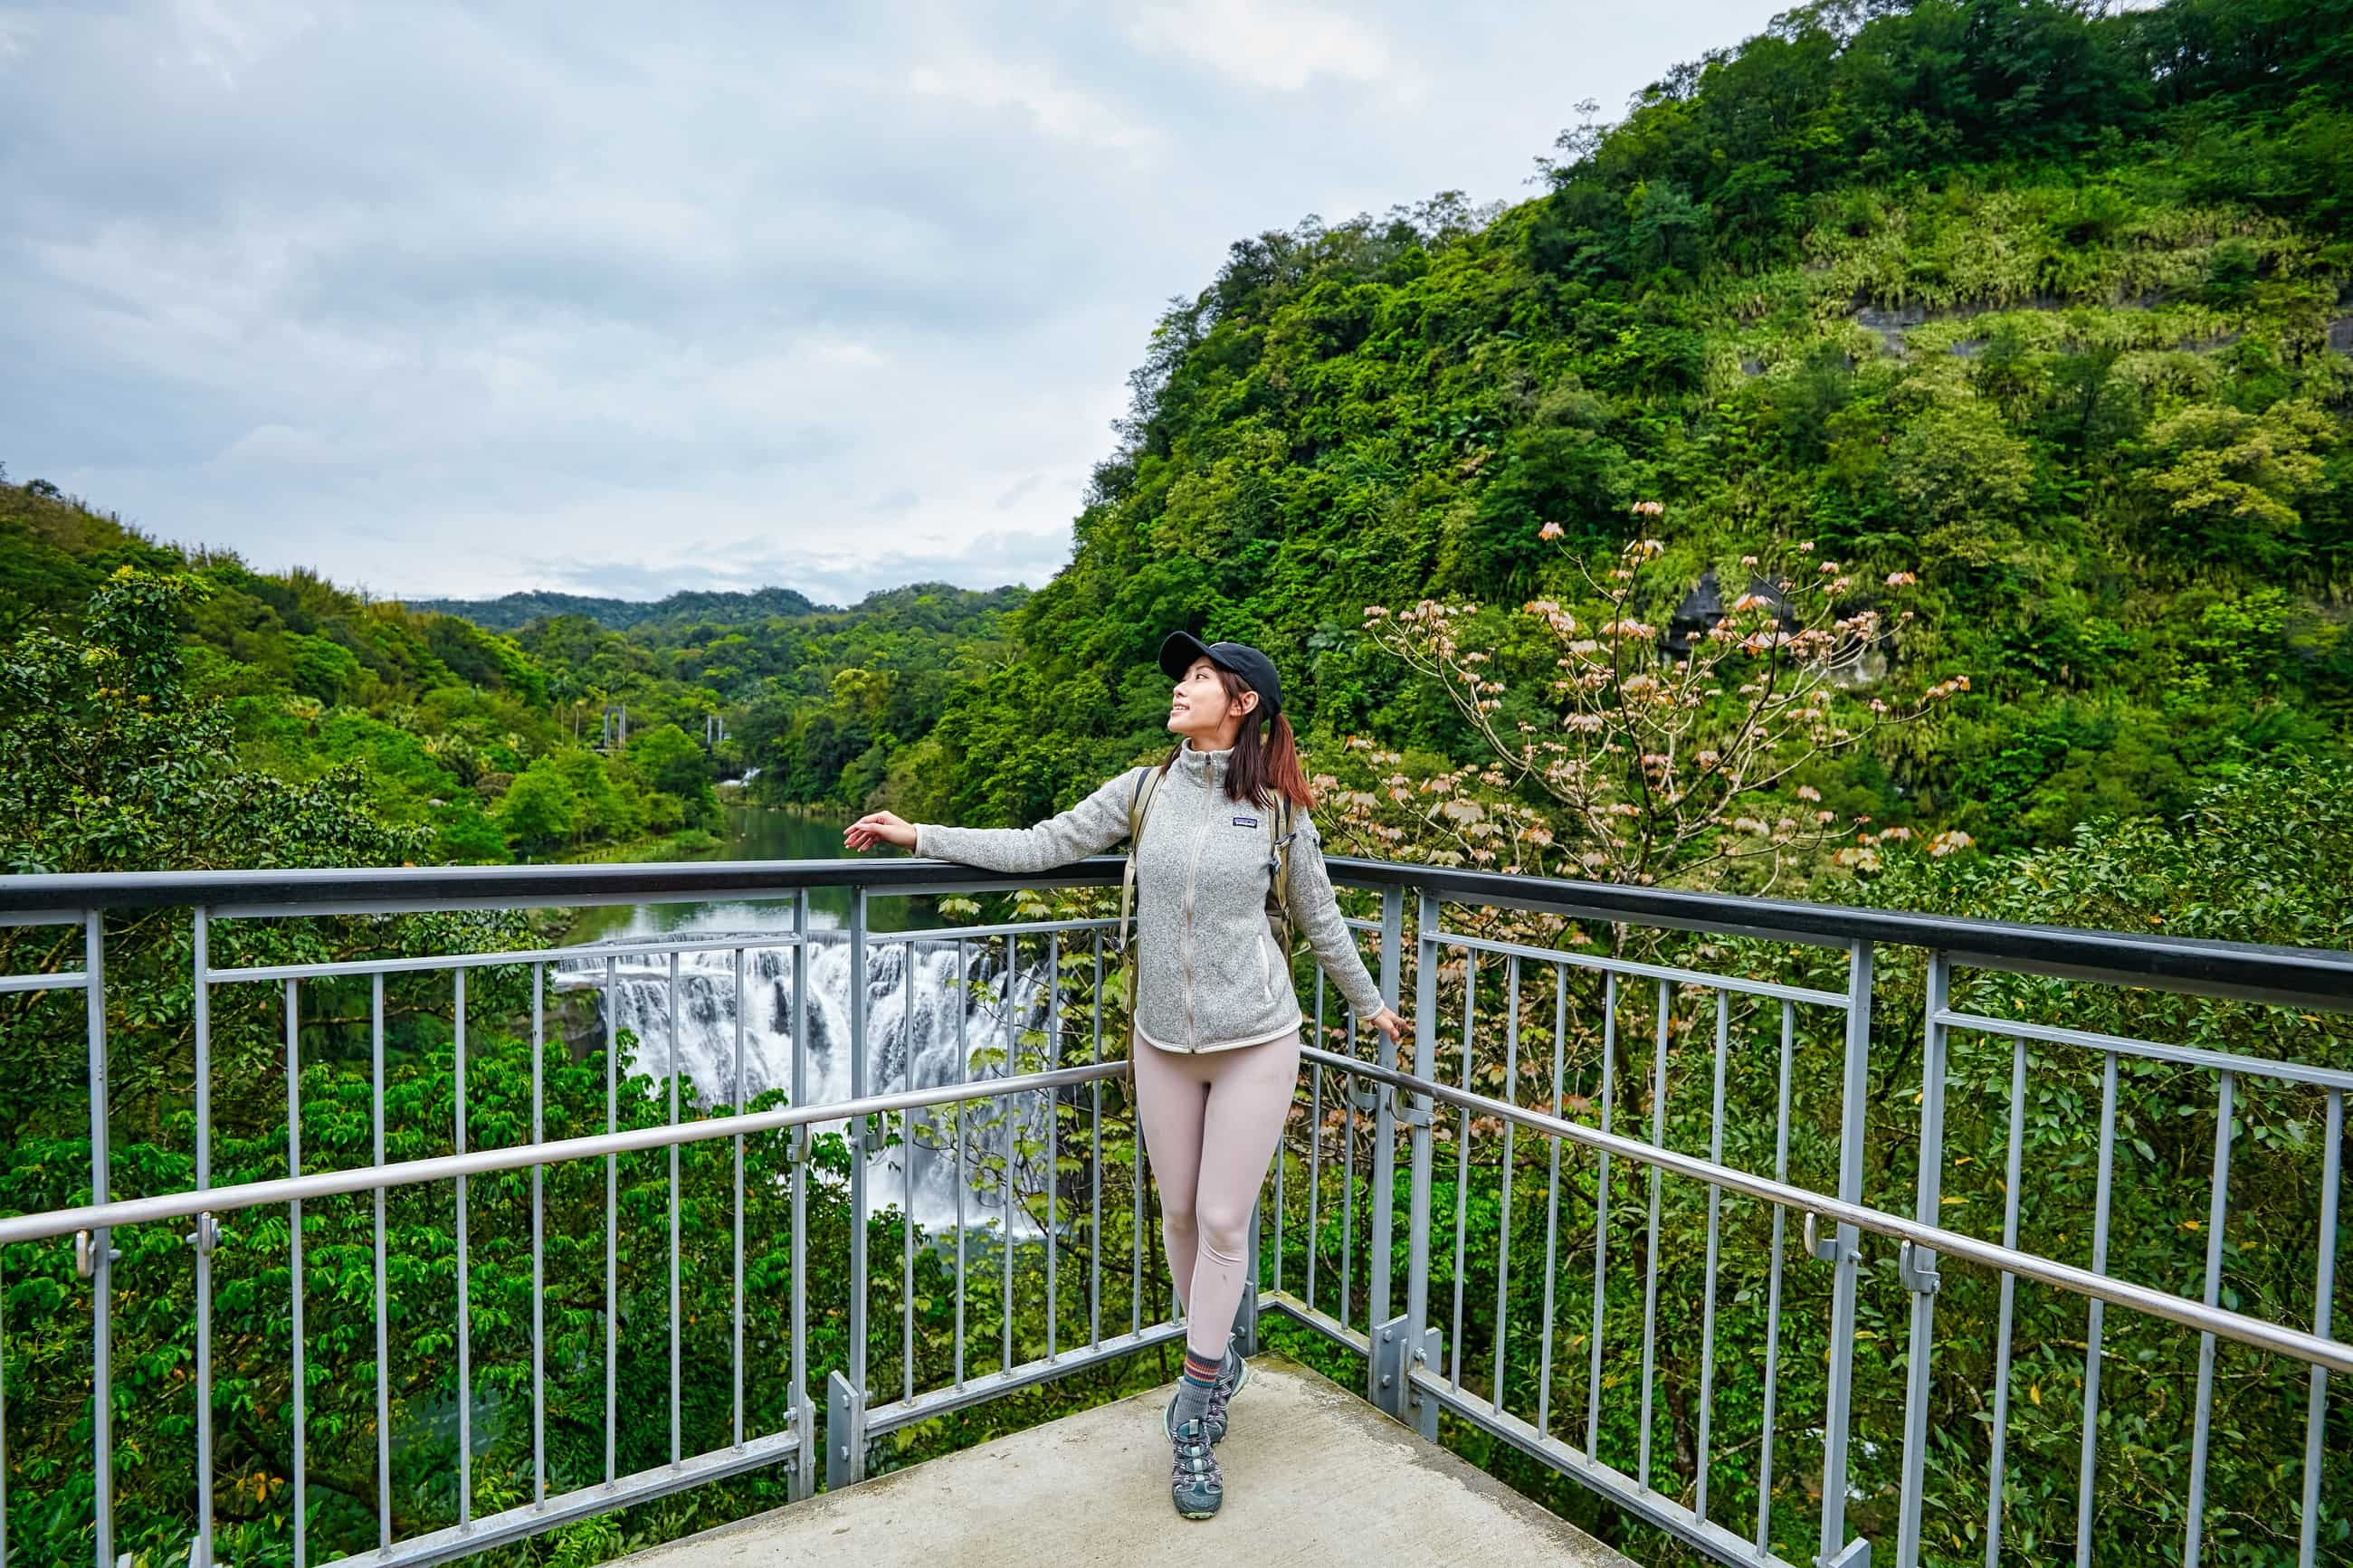 十分瀑布有台灣尼加拉瀑布之稱，設有多處的觀瀑平台，亦設置友善步道，推廣無障礙空間，全民共賞瀑布之美